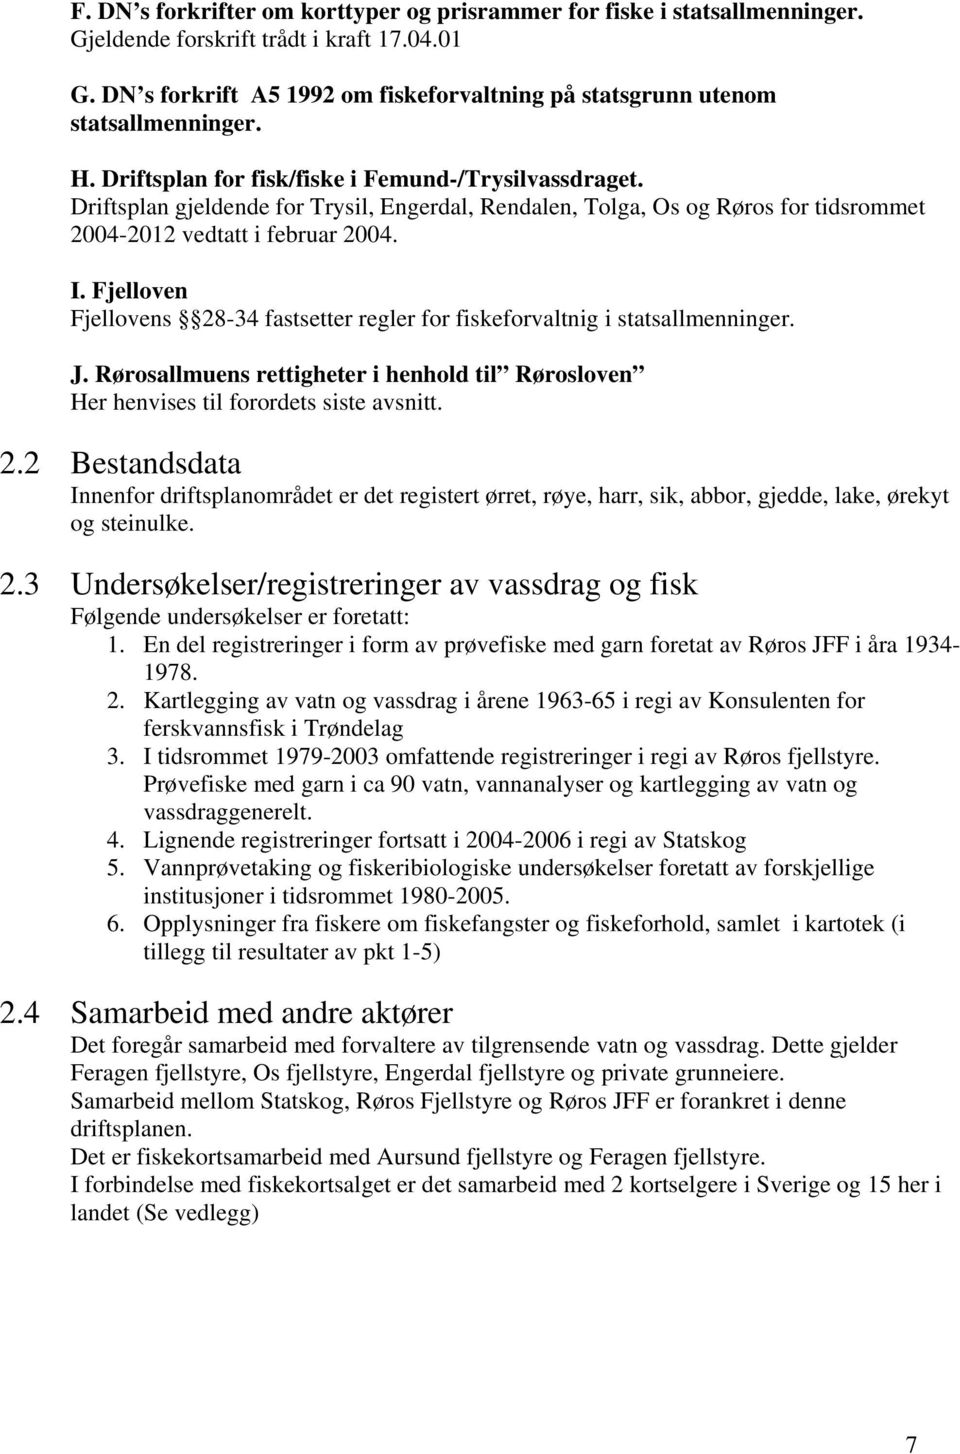 Driftsplan gjeldende for Trysil, Engerdal, Rendalen, Tolga, Os og Røros for tidsrommet 2004-2012 vedtatt i februar 2004. I.